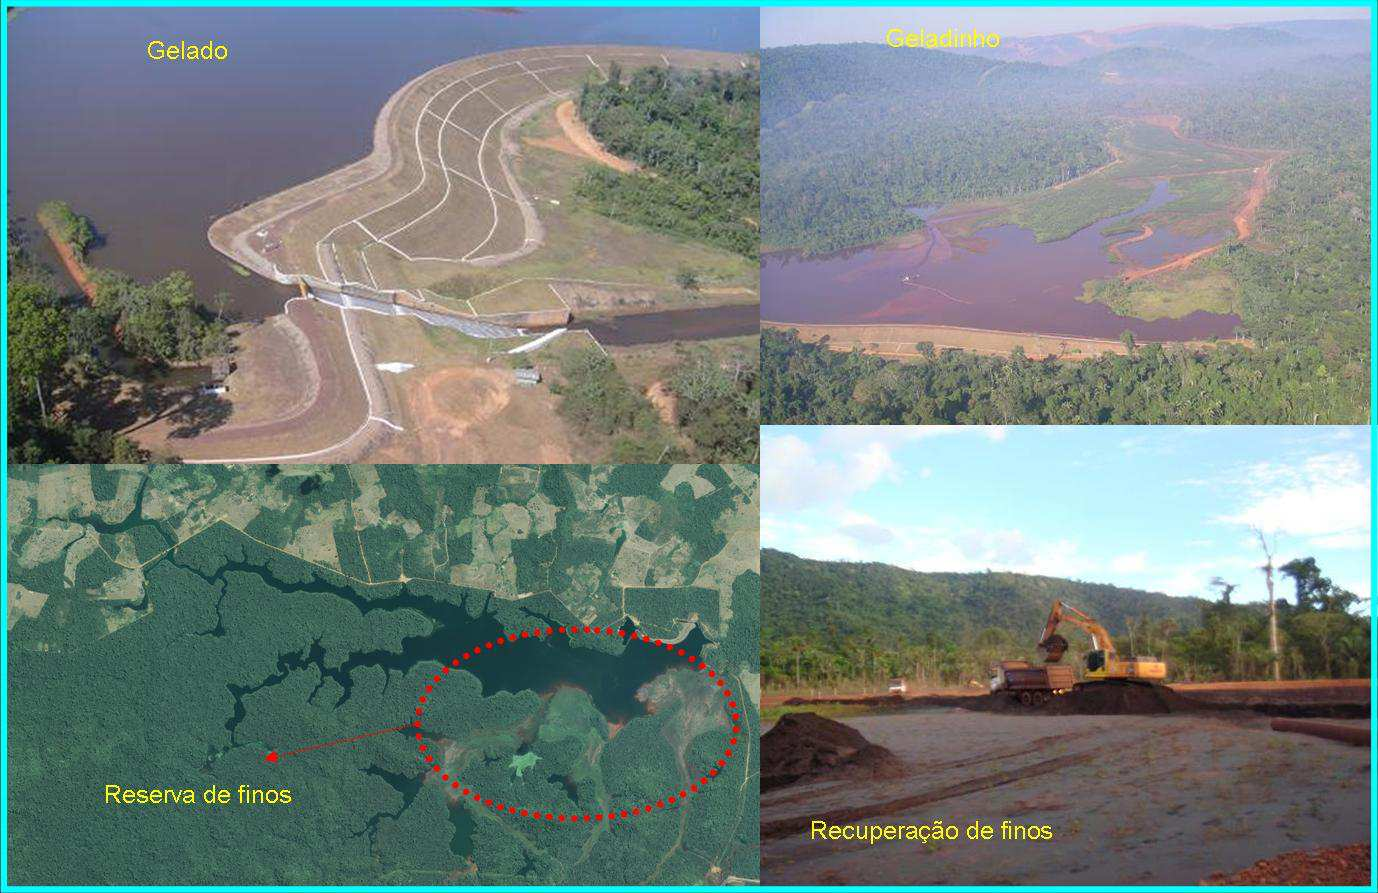  Vale apresenta sistema de segurança de suas barragens a secretários de Parauapebas